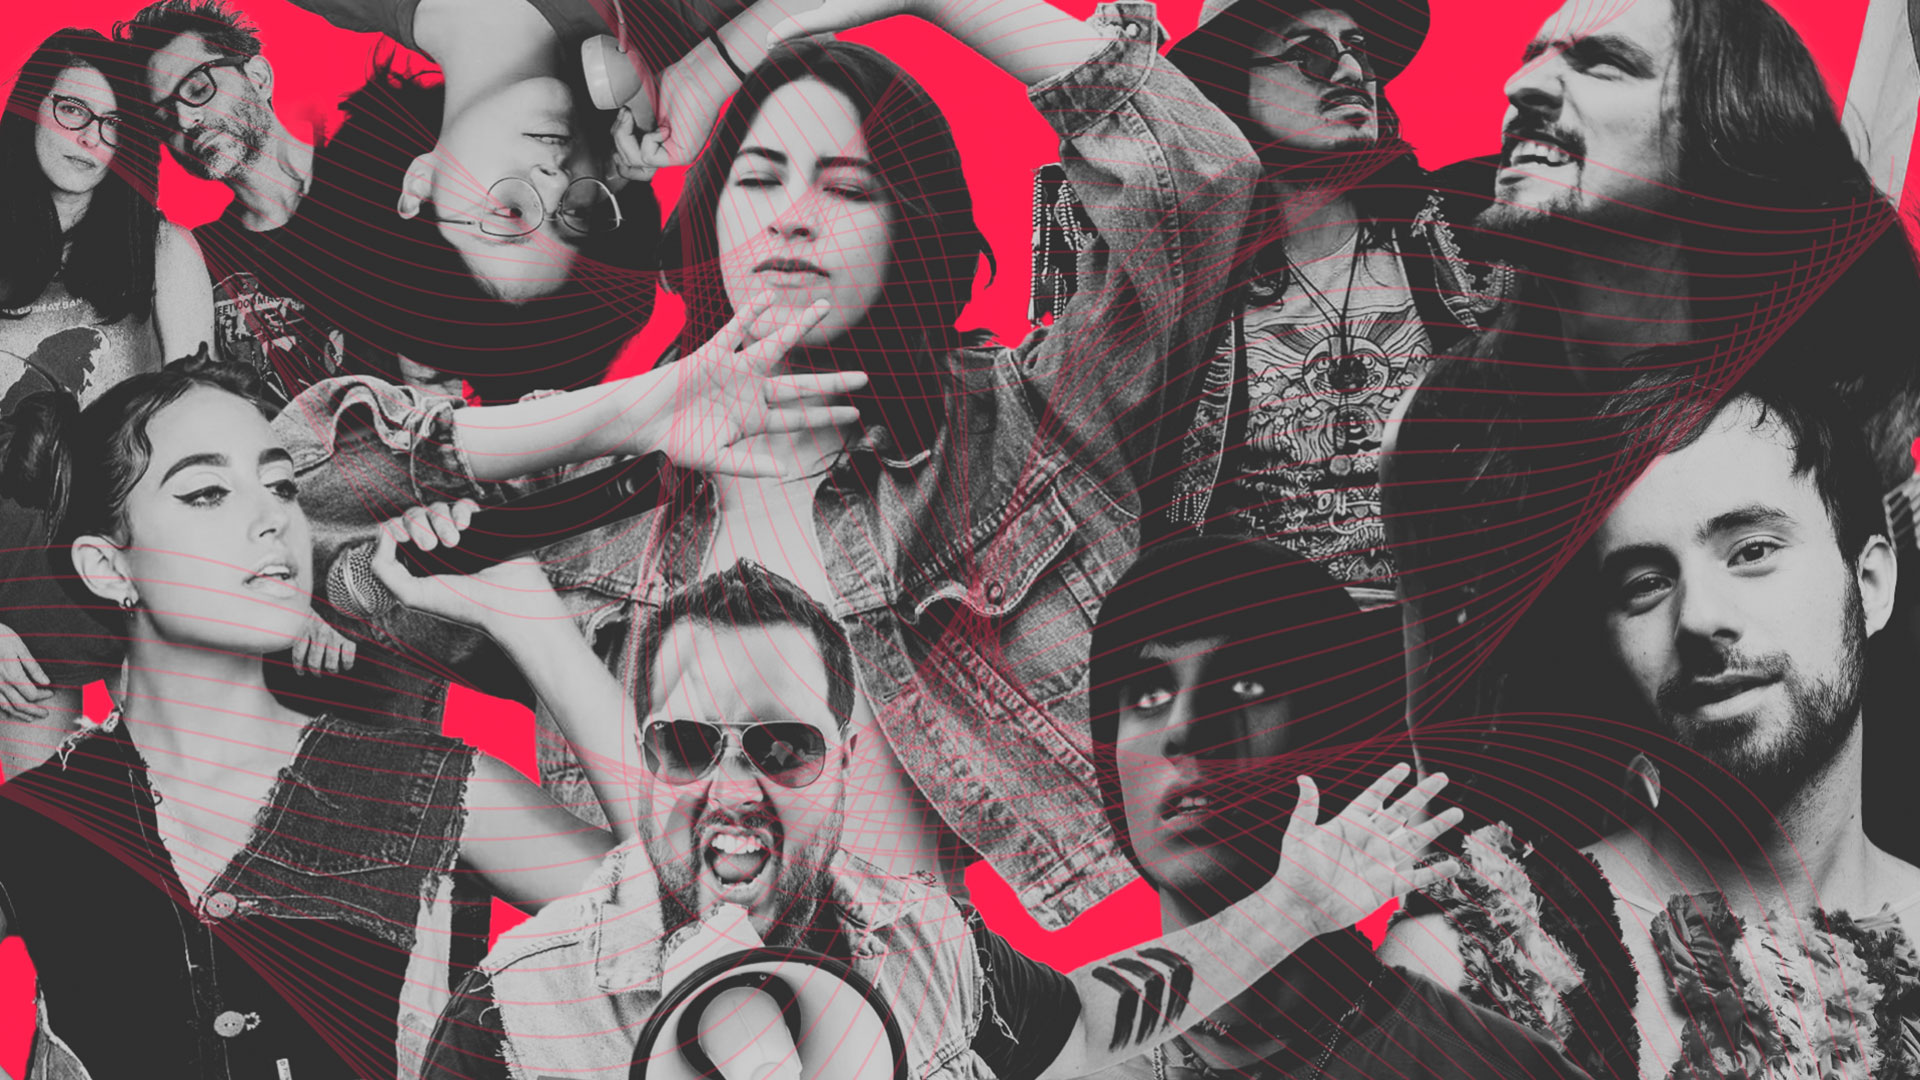 Adrian Bello, Nicole Favre y otros artistas peruanos con nueva música en un collage con fondo rojo